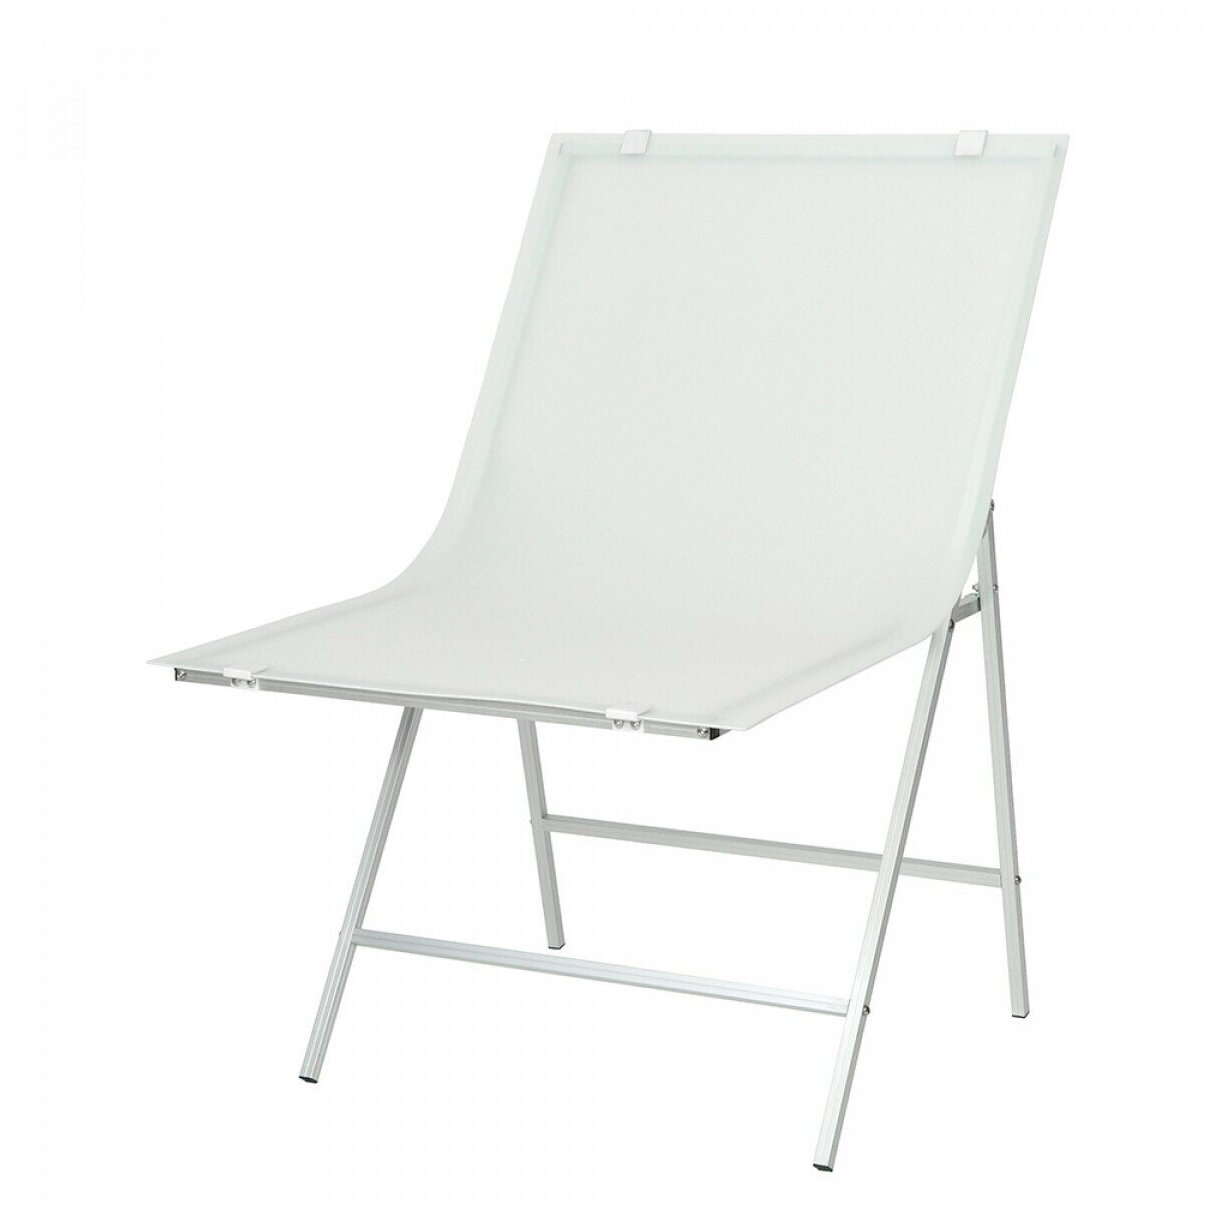 Стол для съемки Falcon Eyes ST-0611CT размер полотна 60х110 см